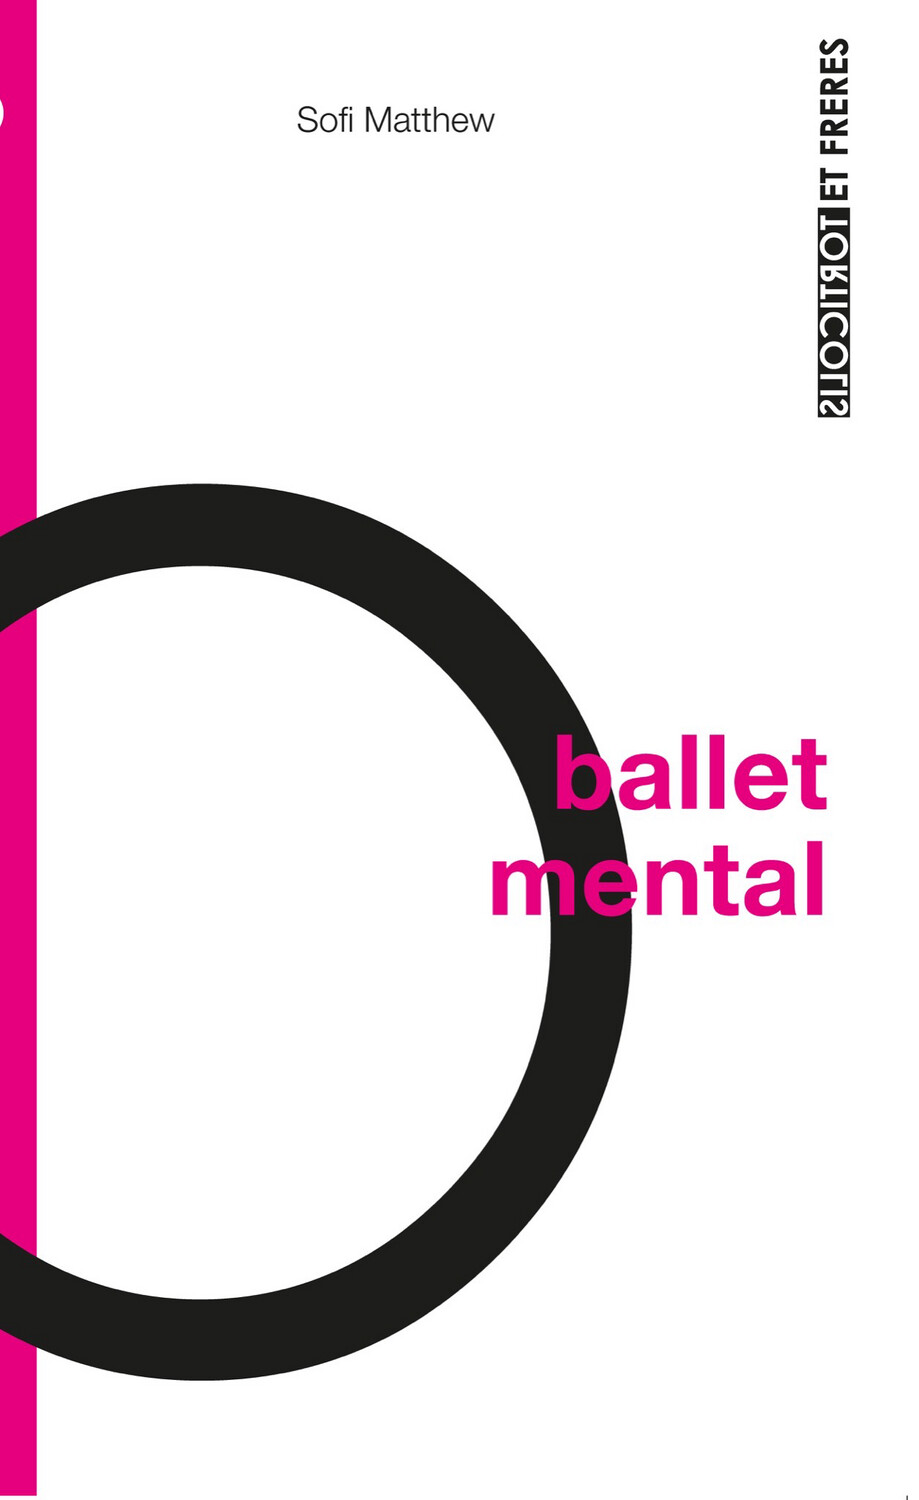 Ballet mental, Sofi Matthew